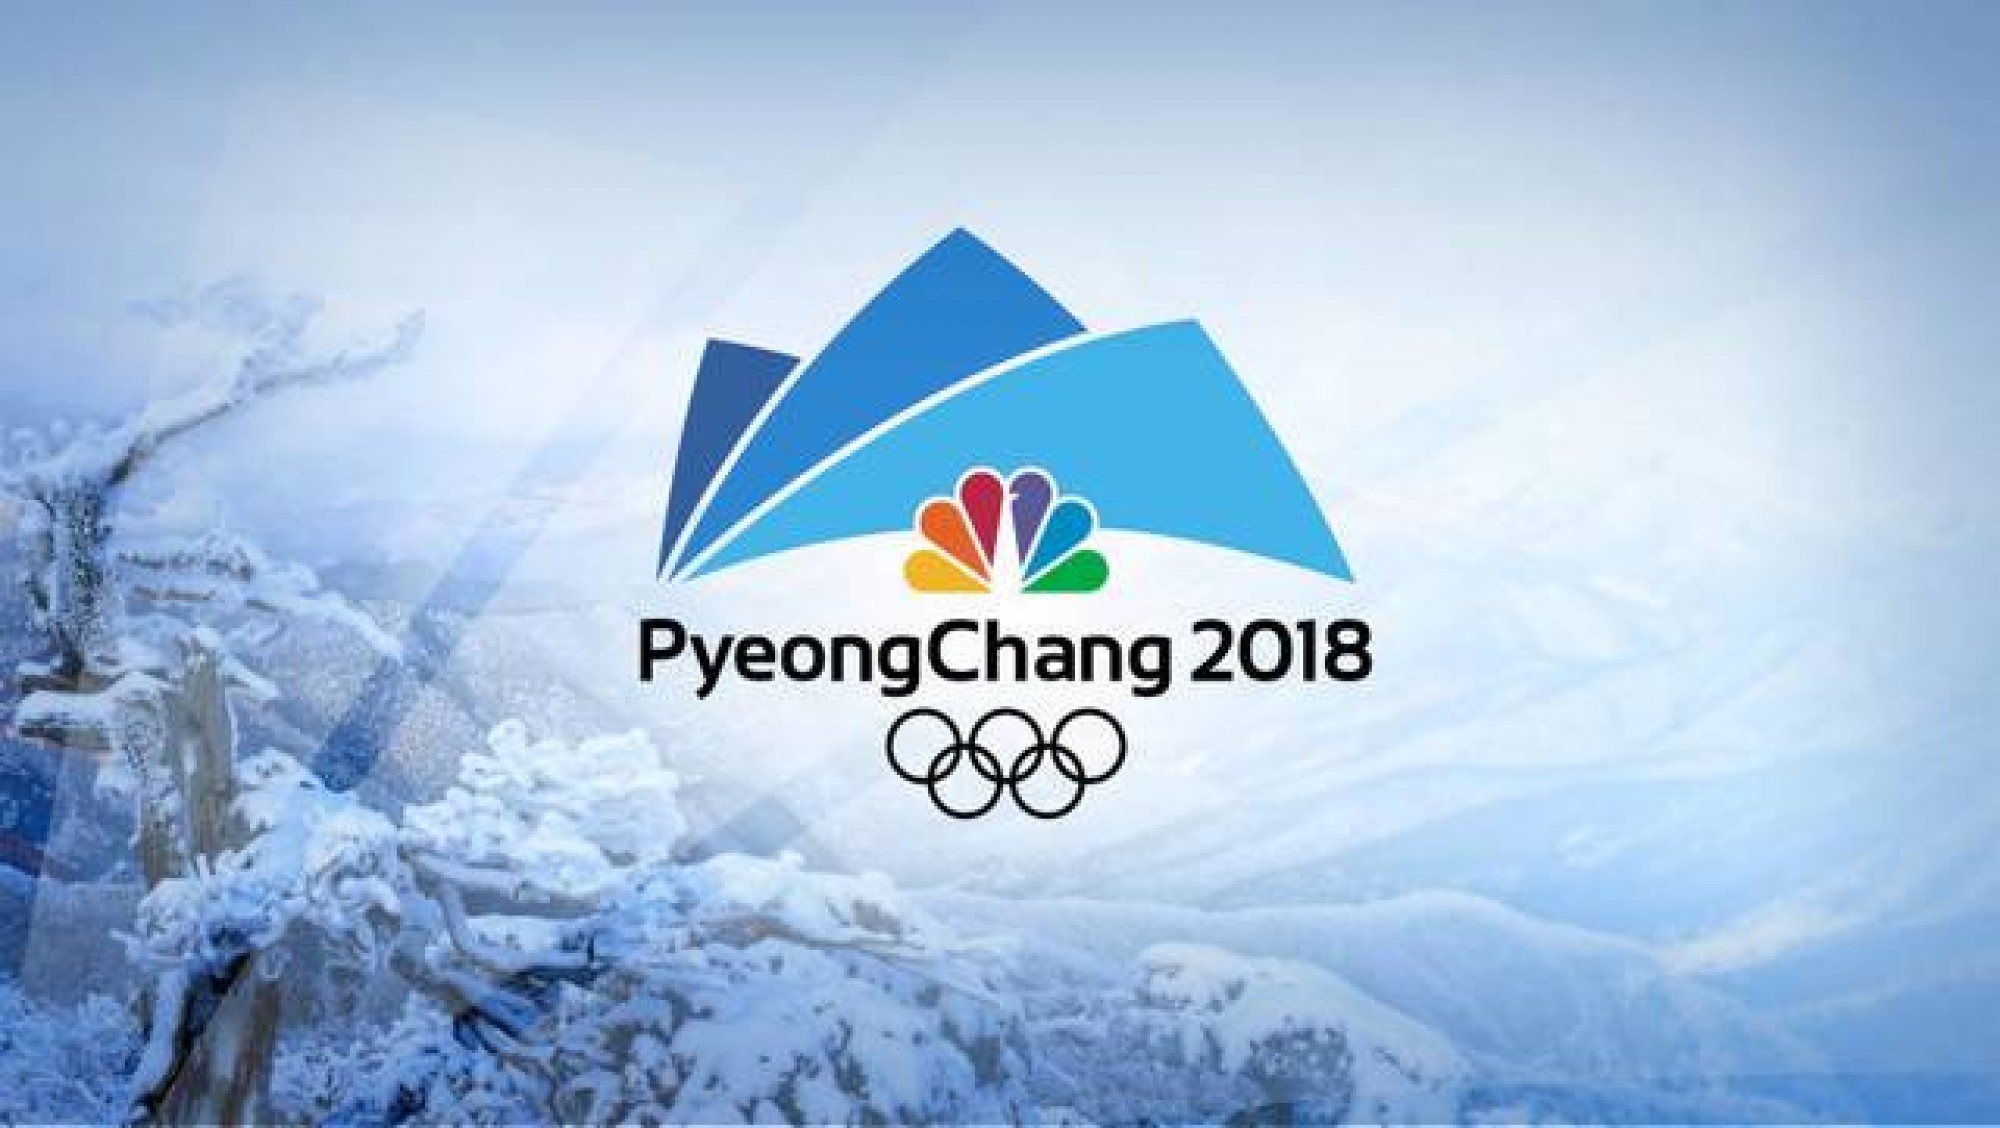 23 зимних олимпийских игр. Пхенчхан 2018. Pyeongchang 2018. XXIII зимние Олимпийские игры.